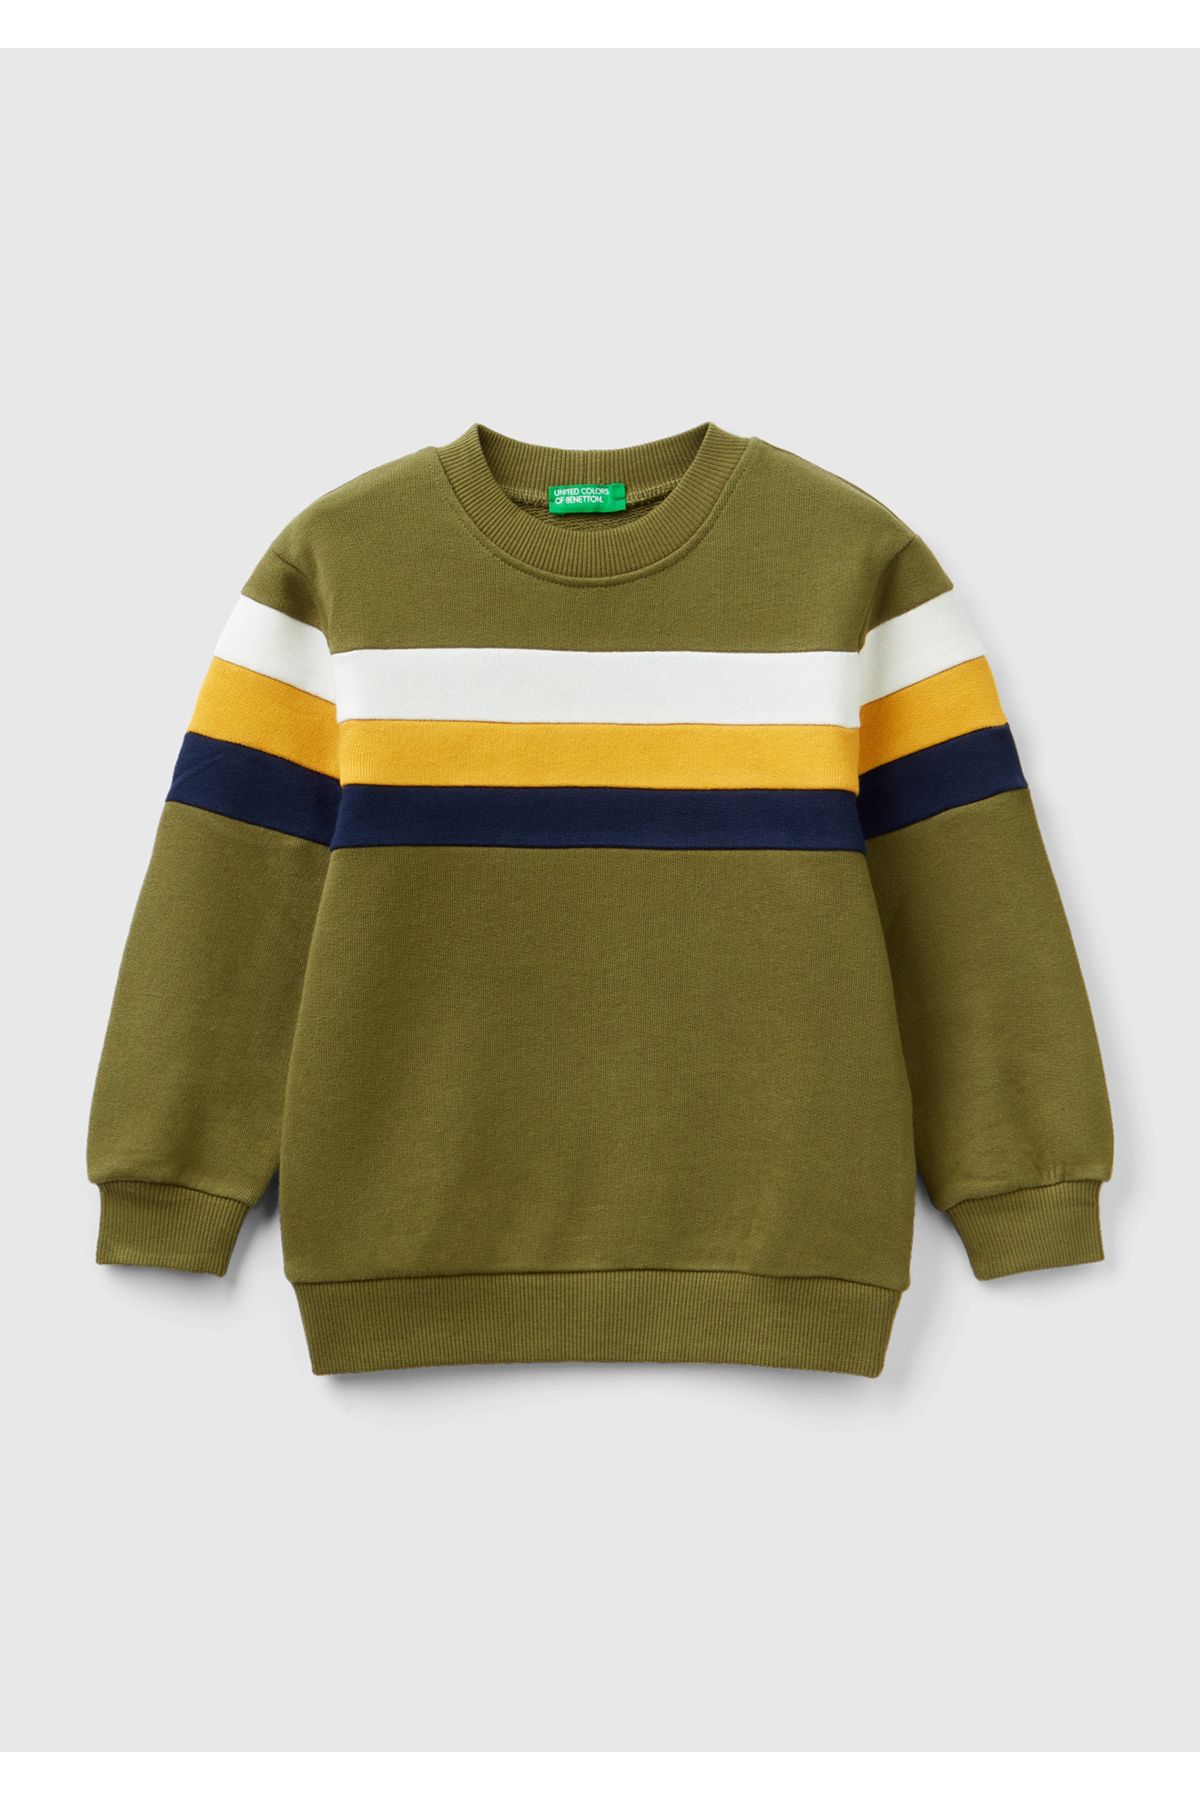 United Colors of Benetton Erkek Çocuk Haki Göğüsünde Yatay Çizgi Detaylı Sweatshirt